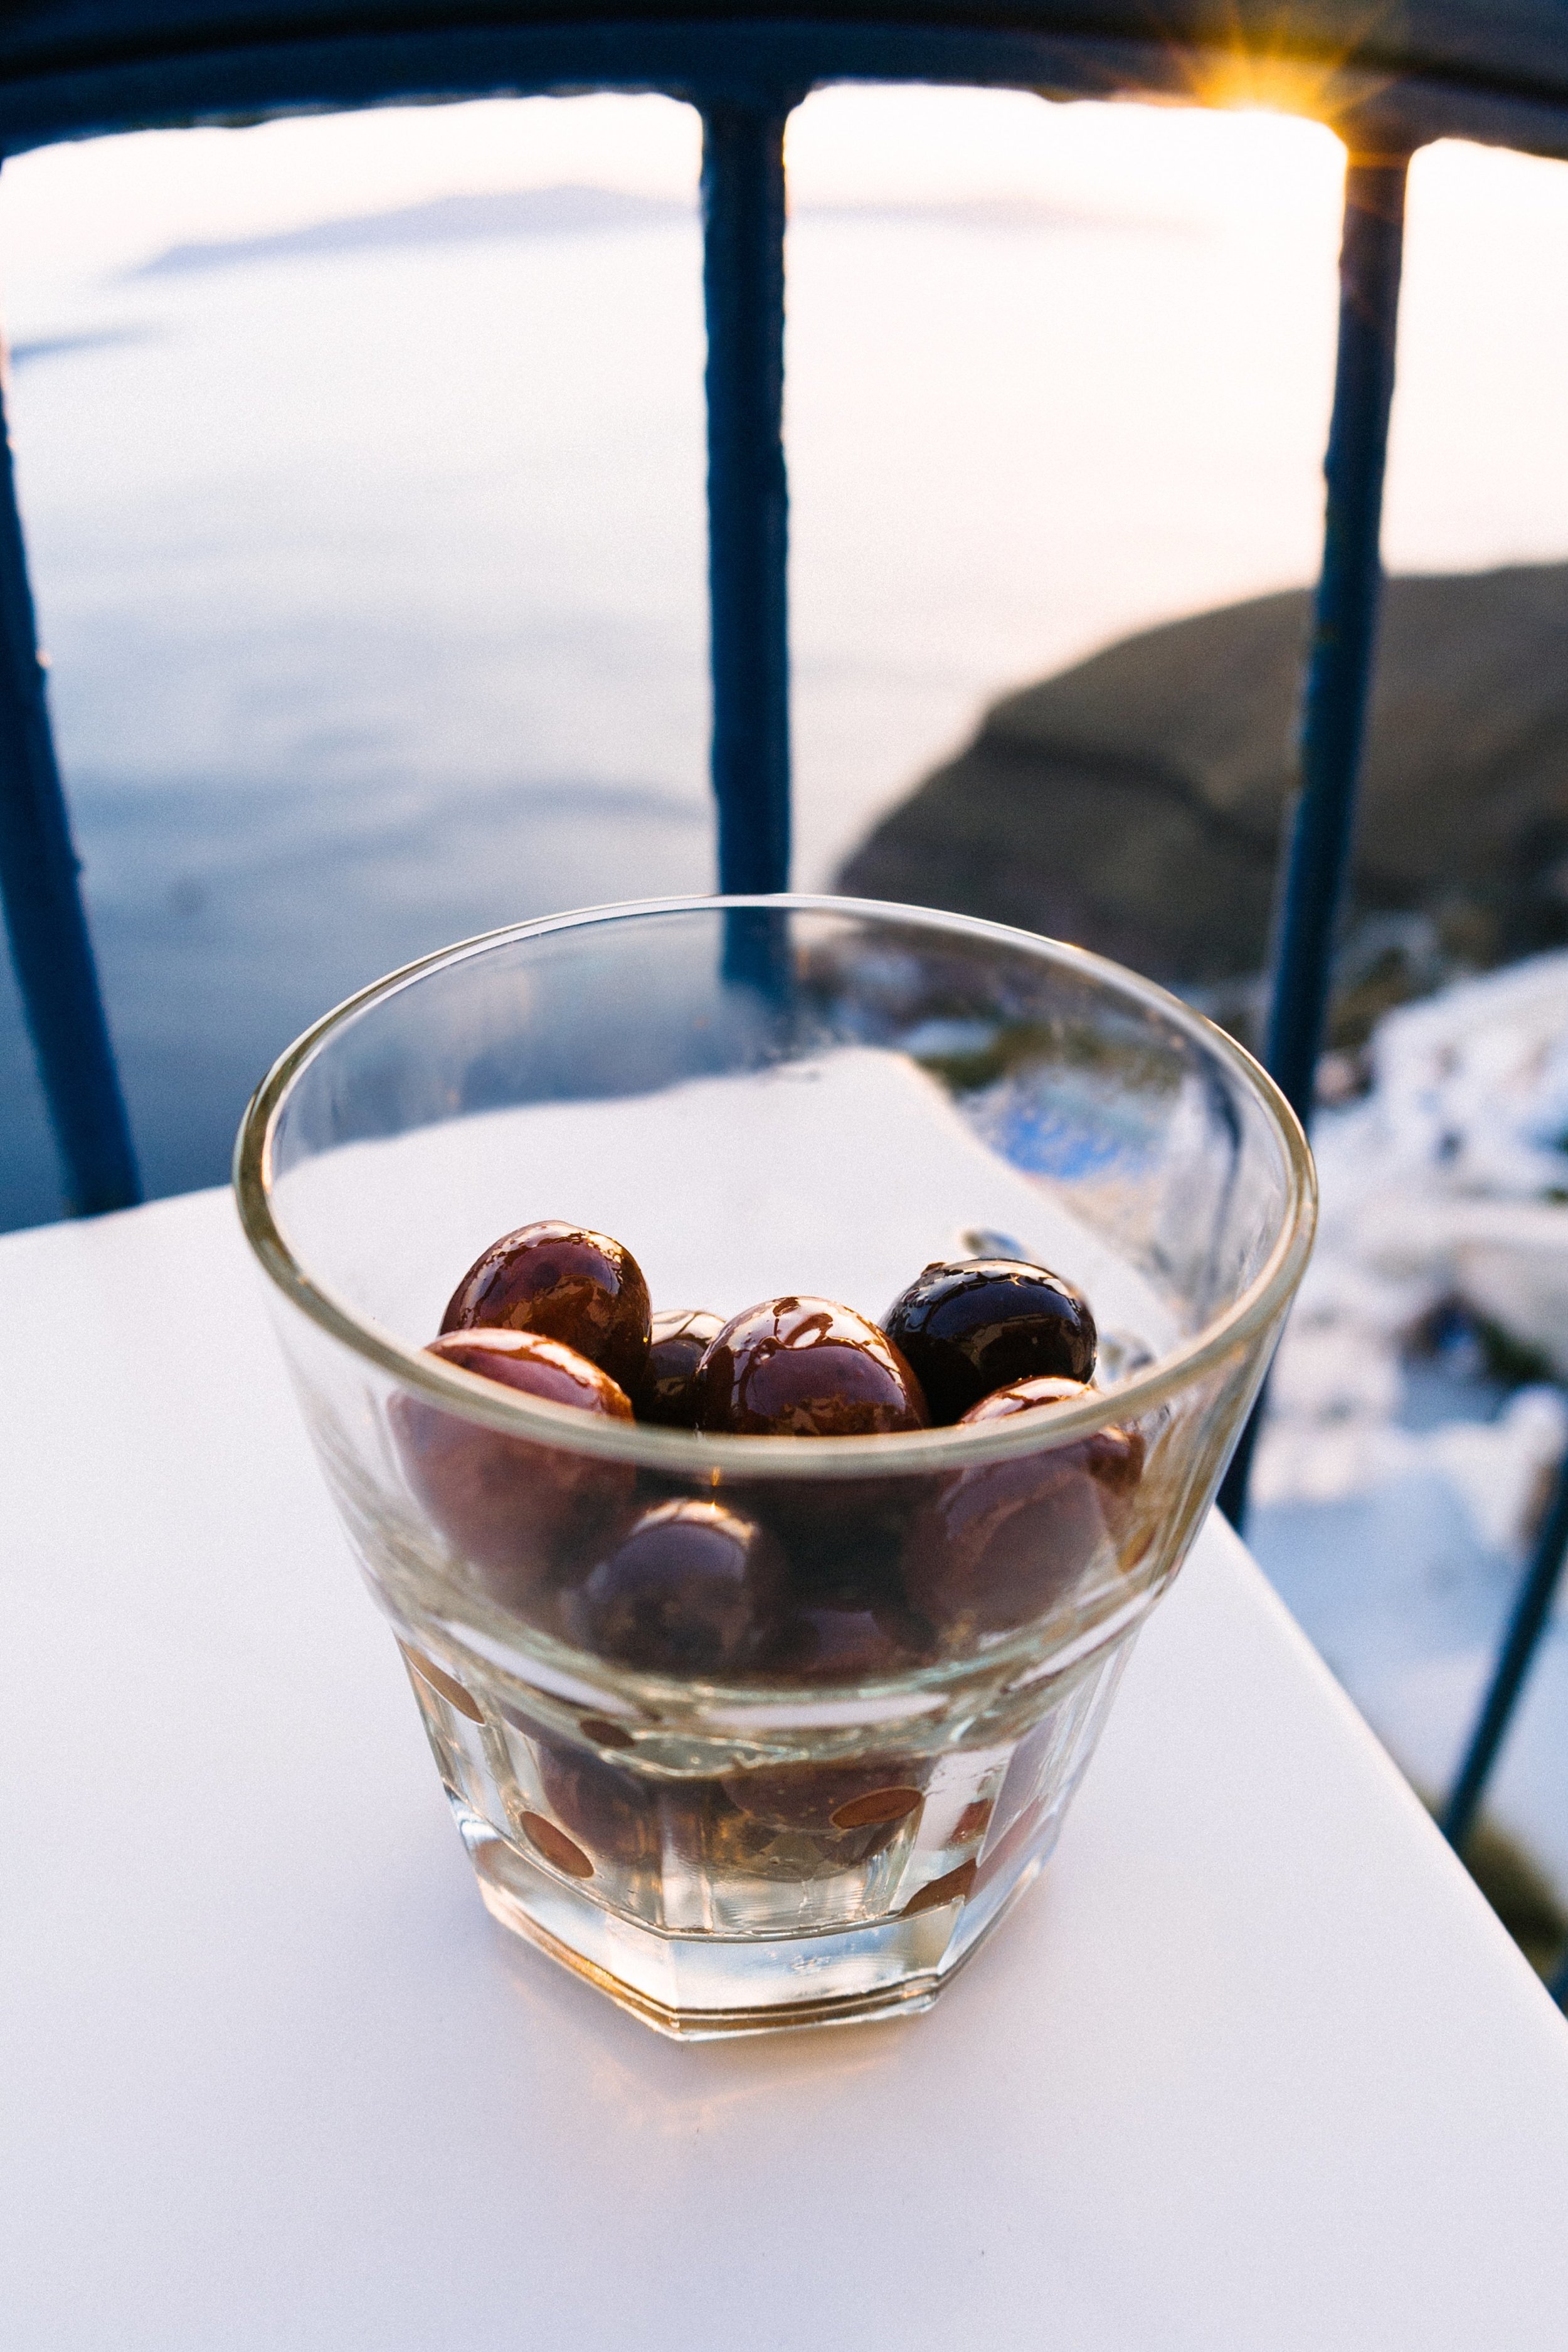  Greek olives forever and always amen. 